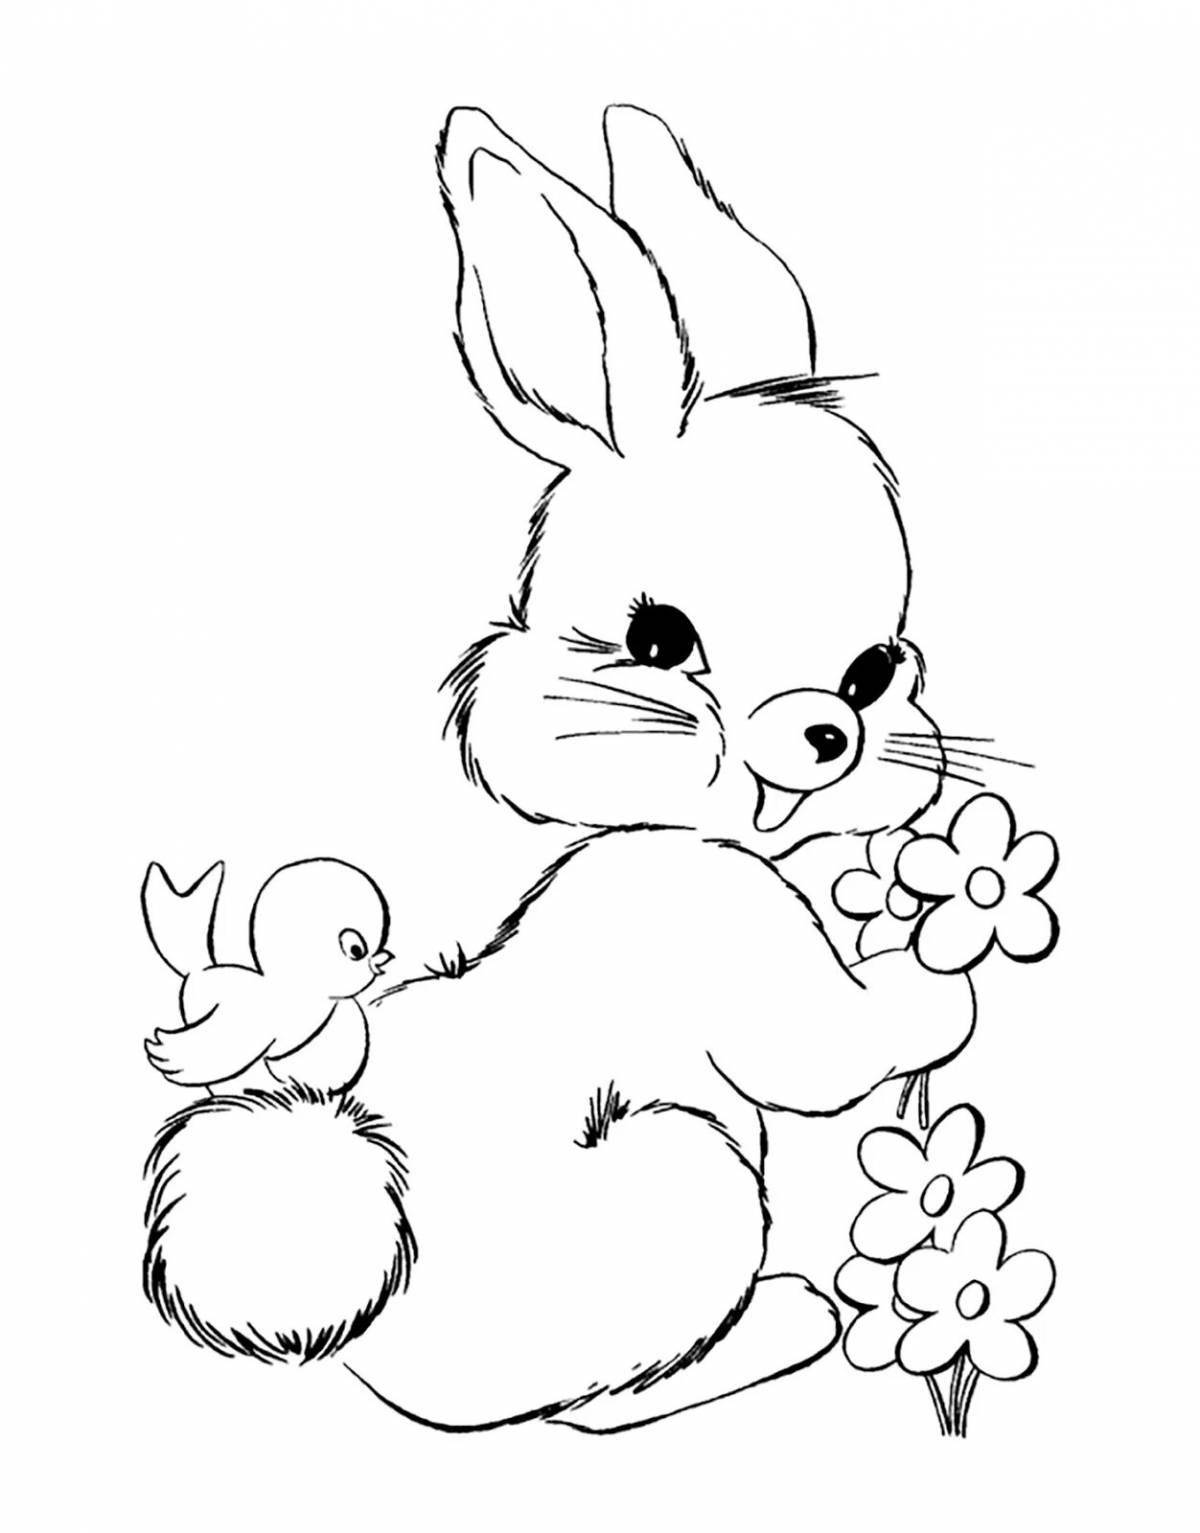 Забавный рисунок кролика для детей